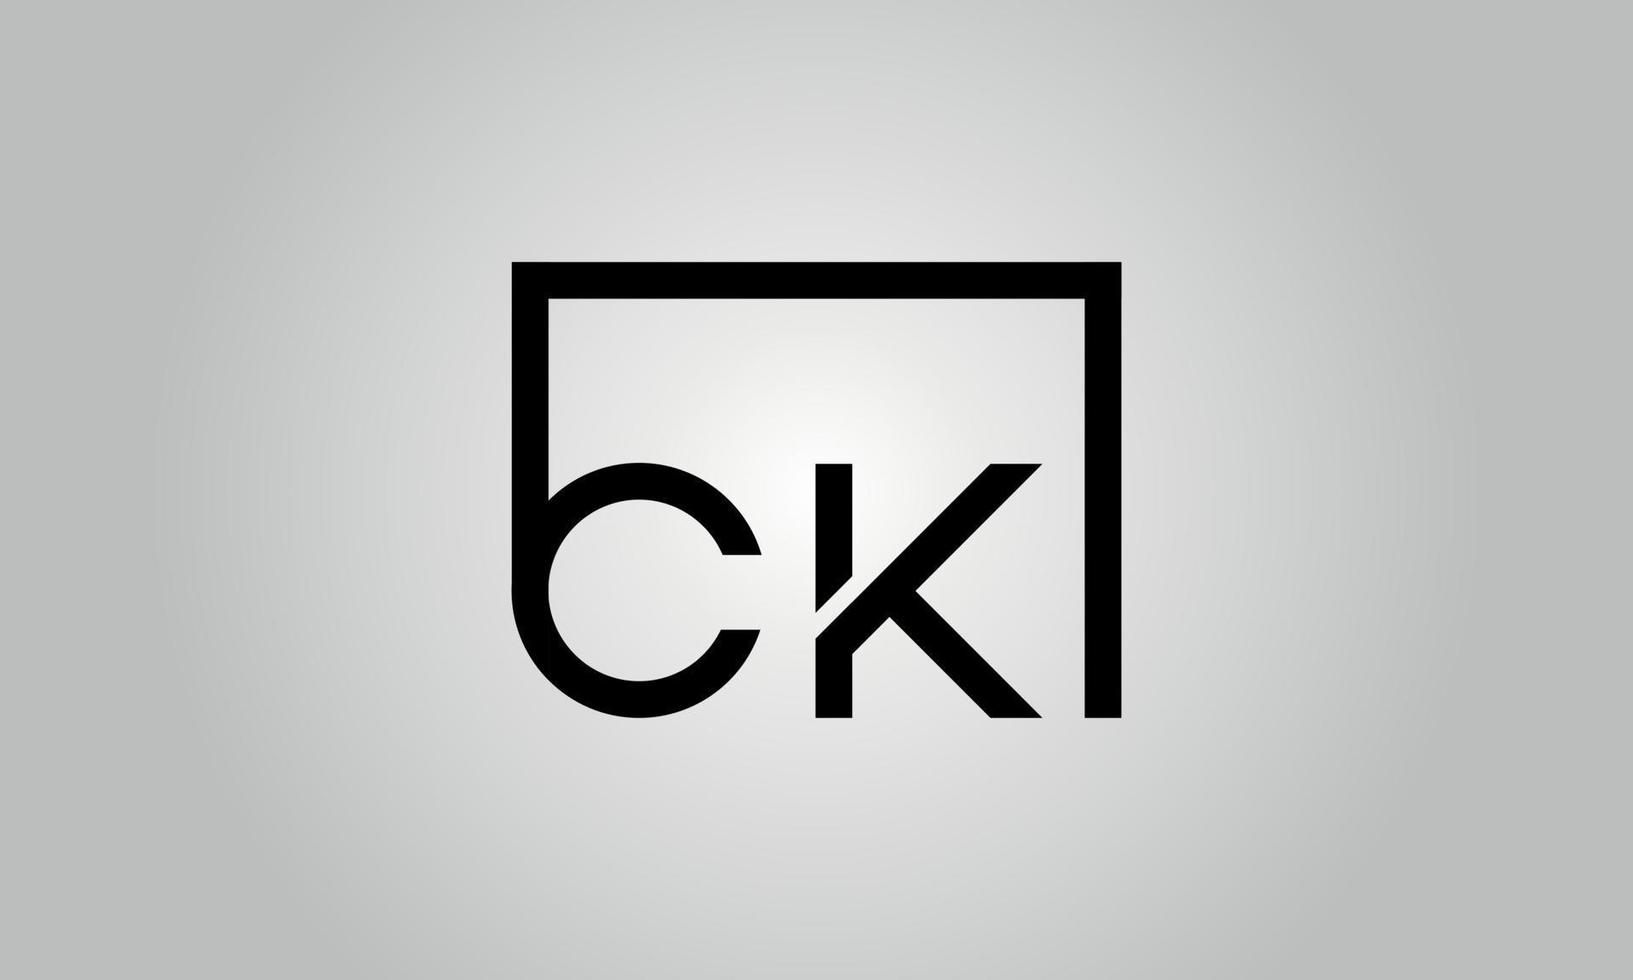 brev ck logotyp design. ck logotyp med fyrkant form i svart färger vektor fri vektor mall.